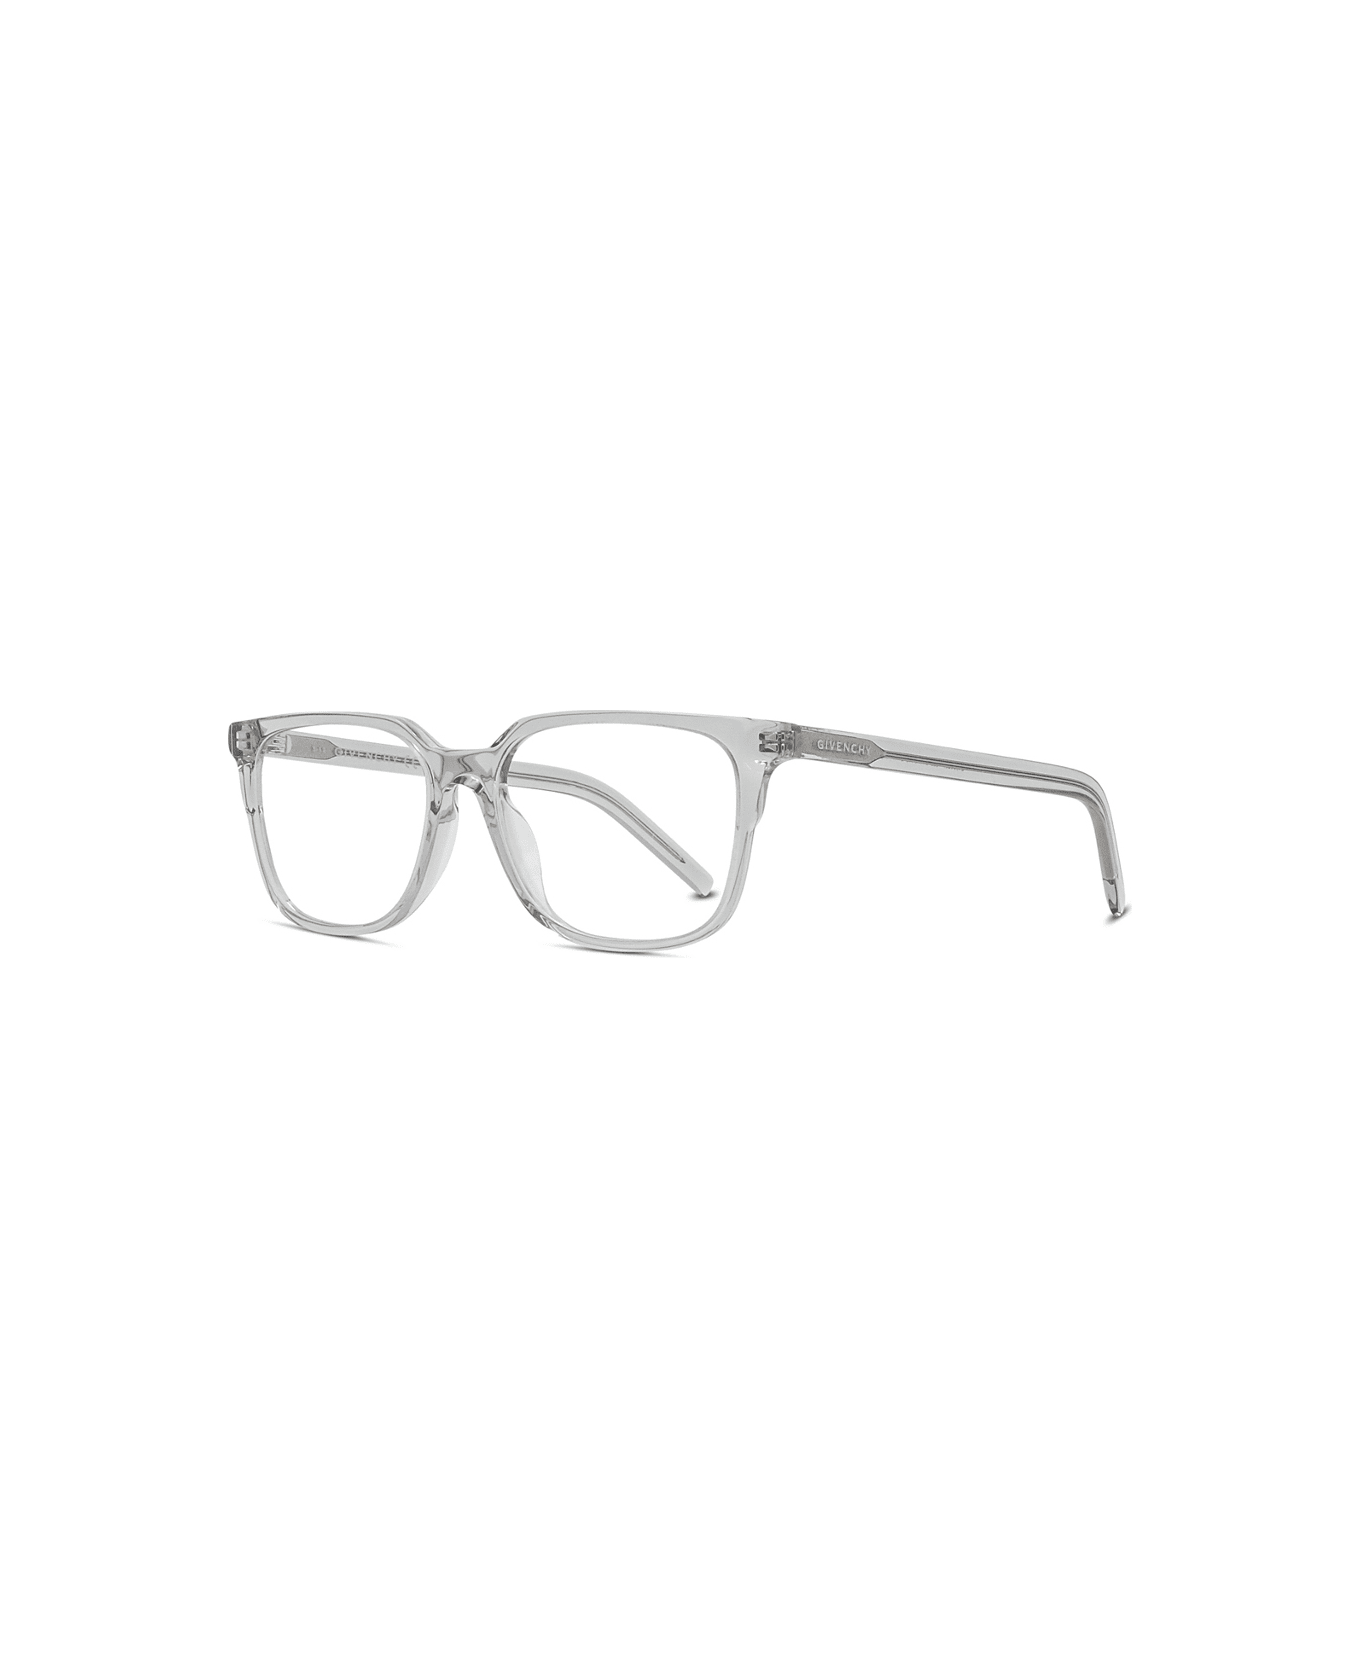 Givenchy Eyewear Gv50020i 020 Glasses